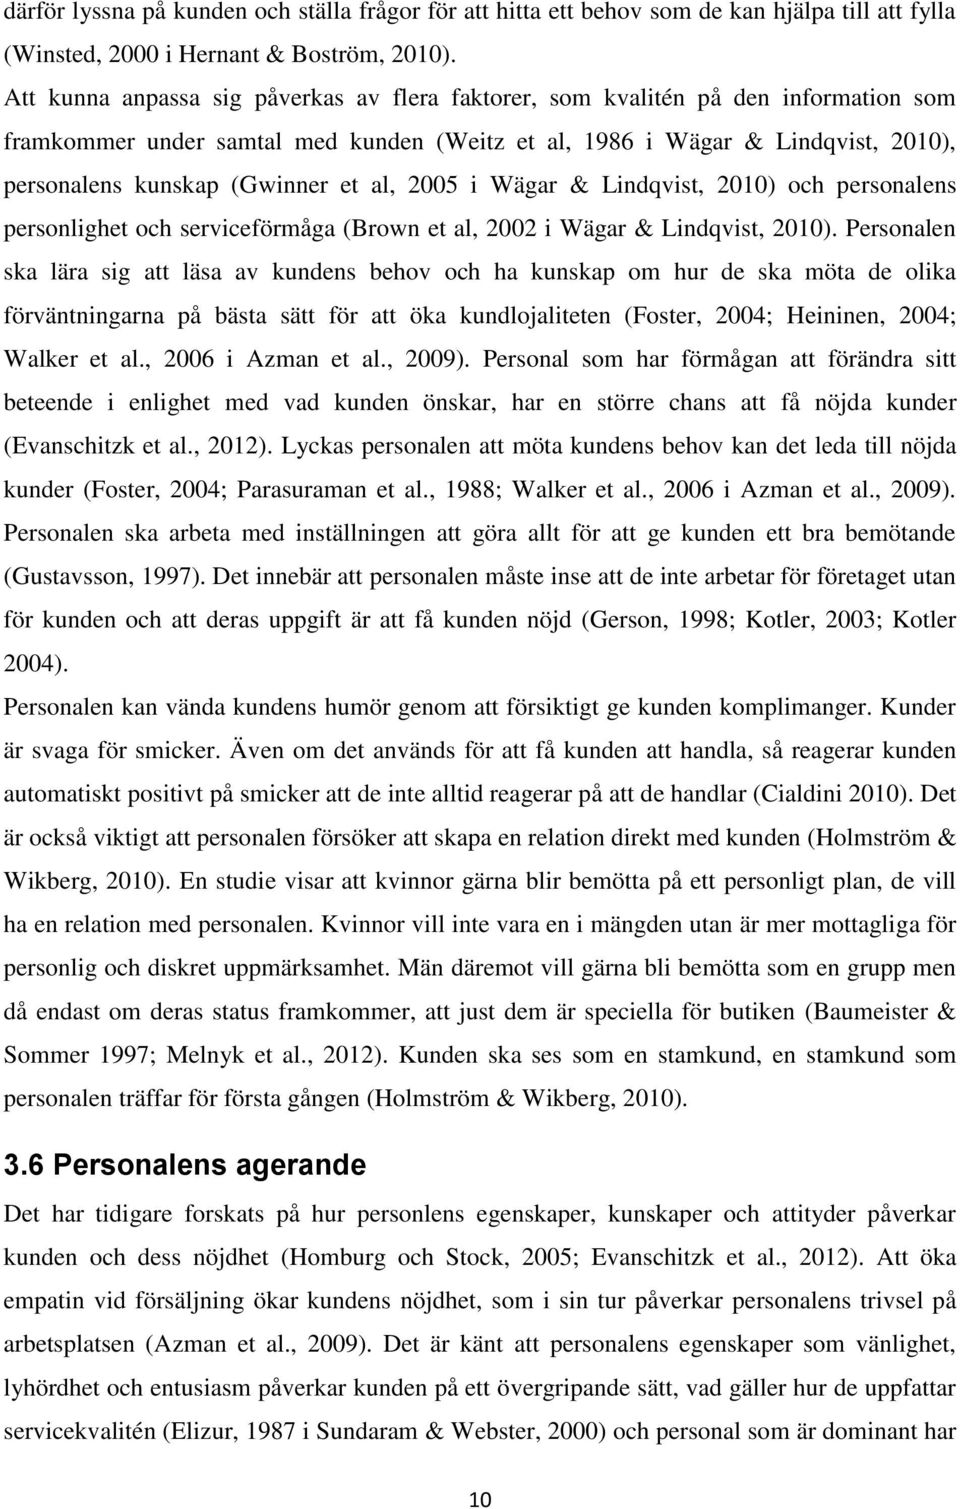 al, 2005 i Wägar & Lindqvist, 2010) och personalens personlighet och serviceförmåga (Brown et al, 2002 i Wägar & Lindqvist, 2010).